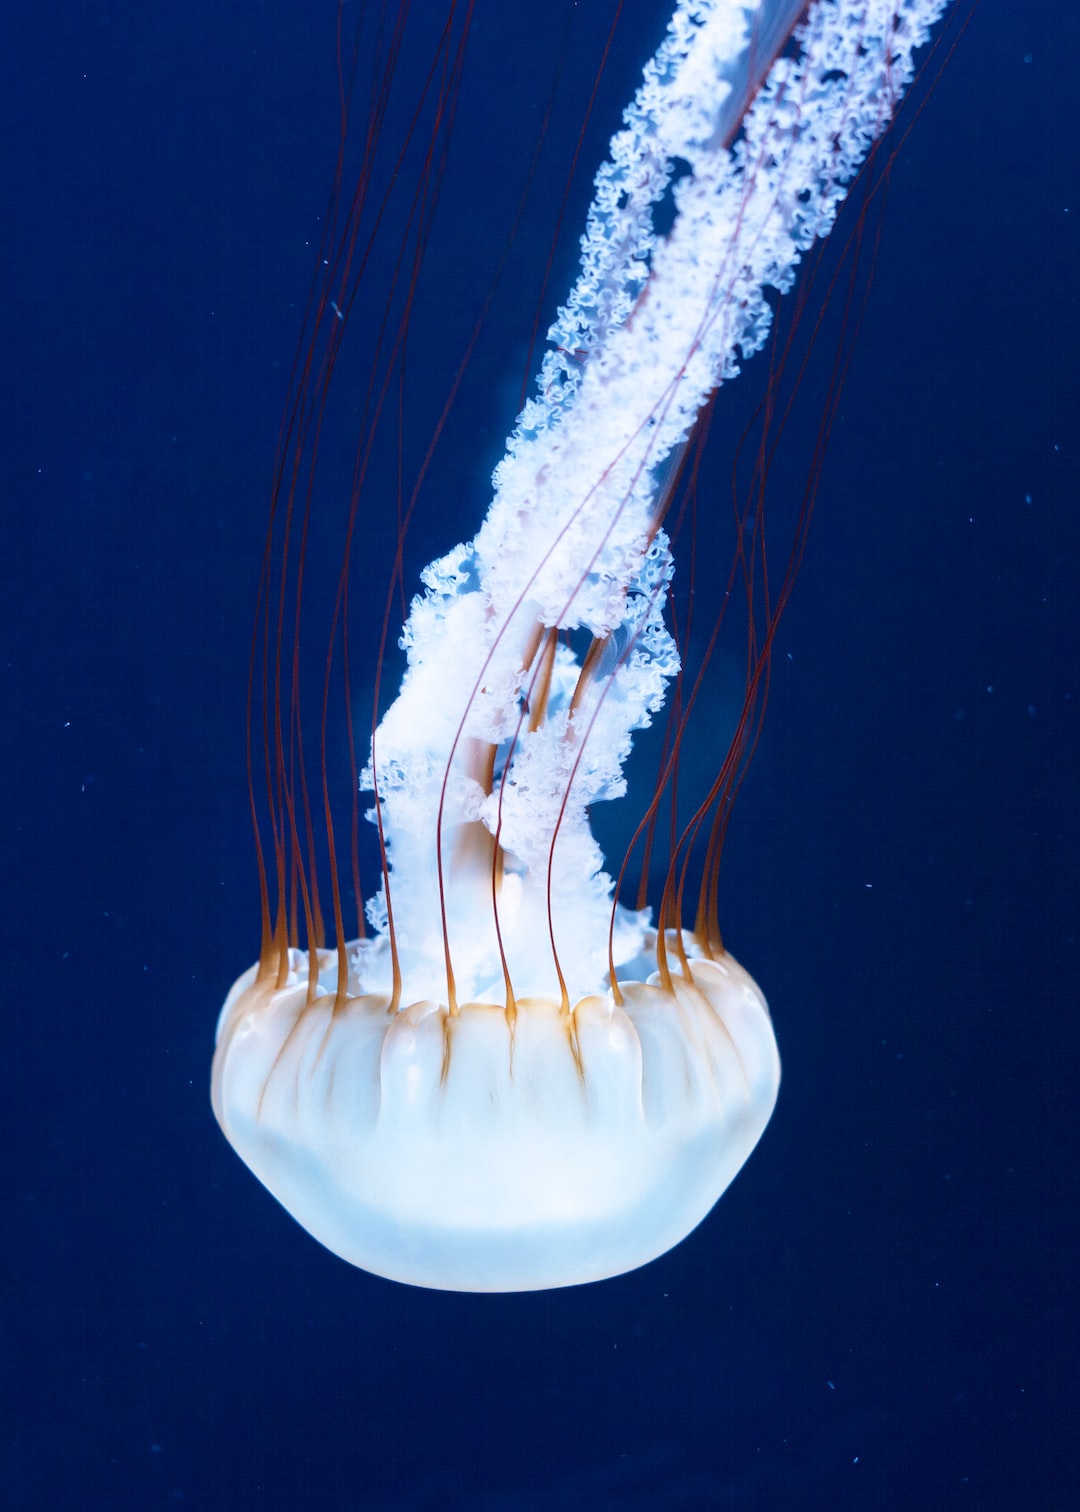 22 wichtige Fragen zu Welche Würmer Leben Im Wasser?